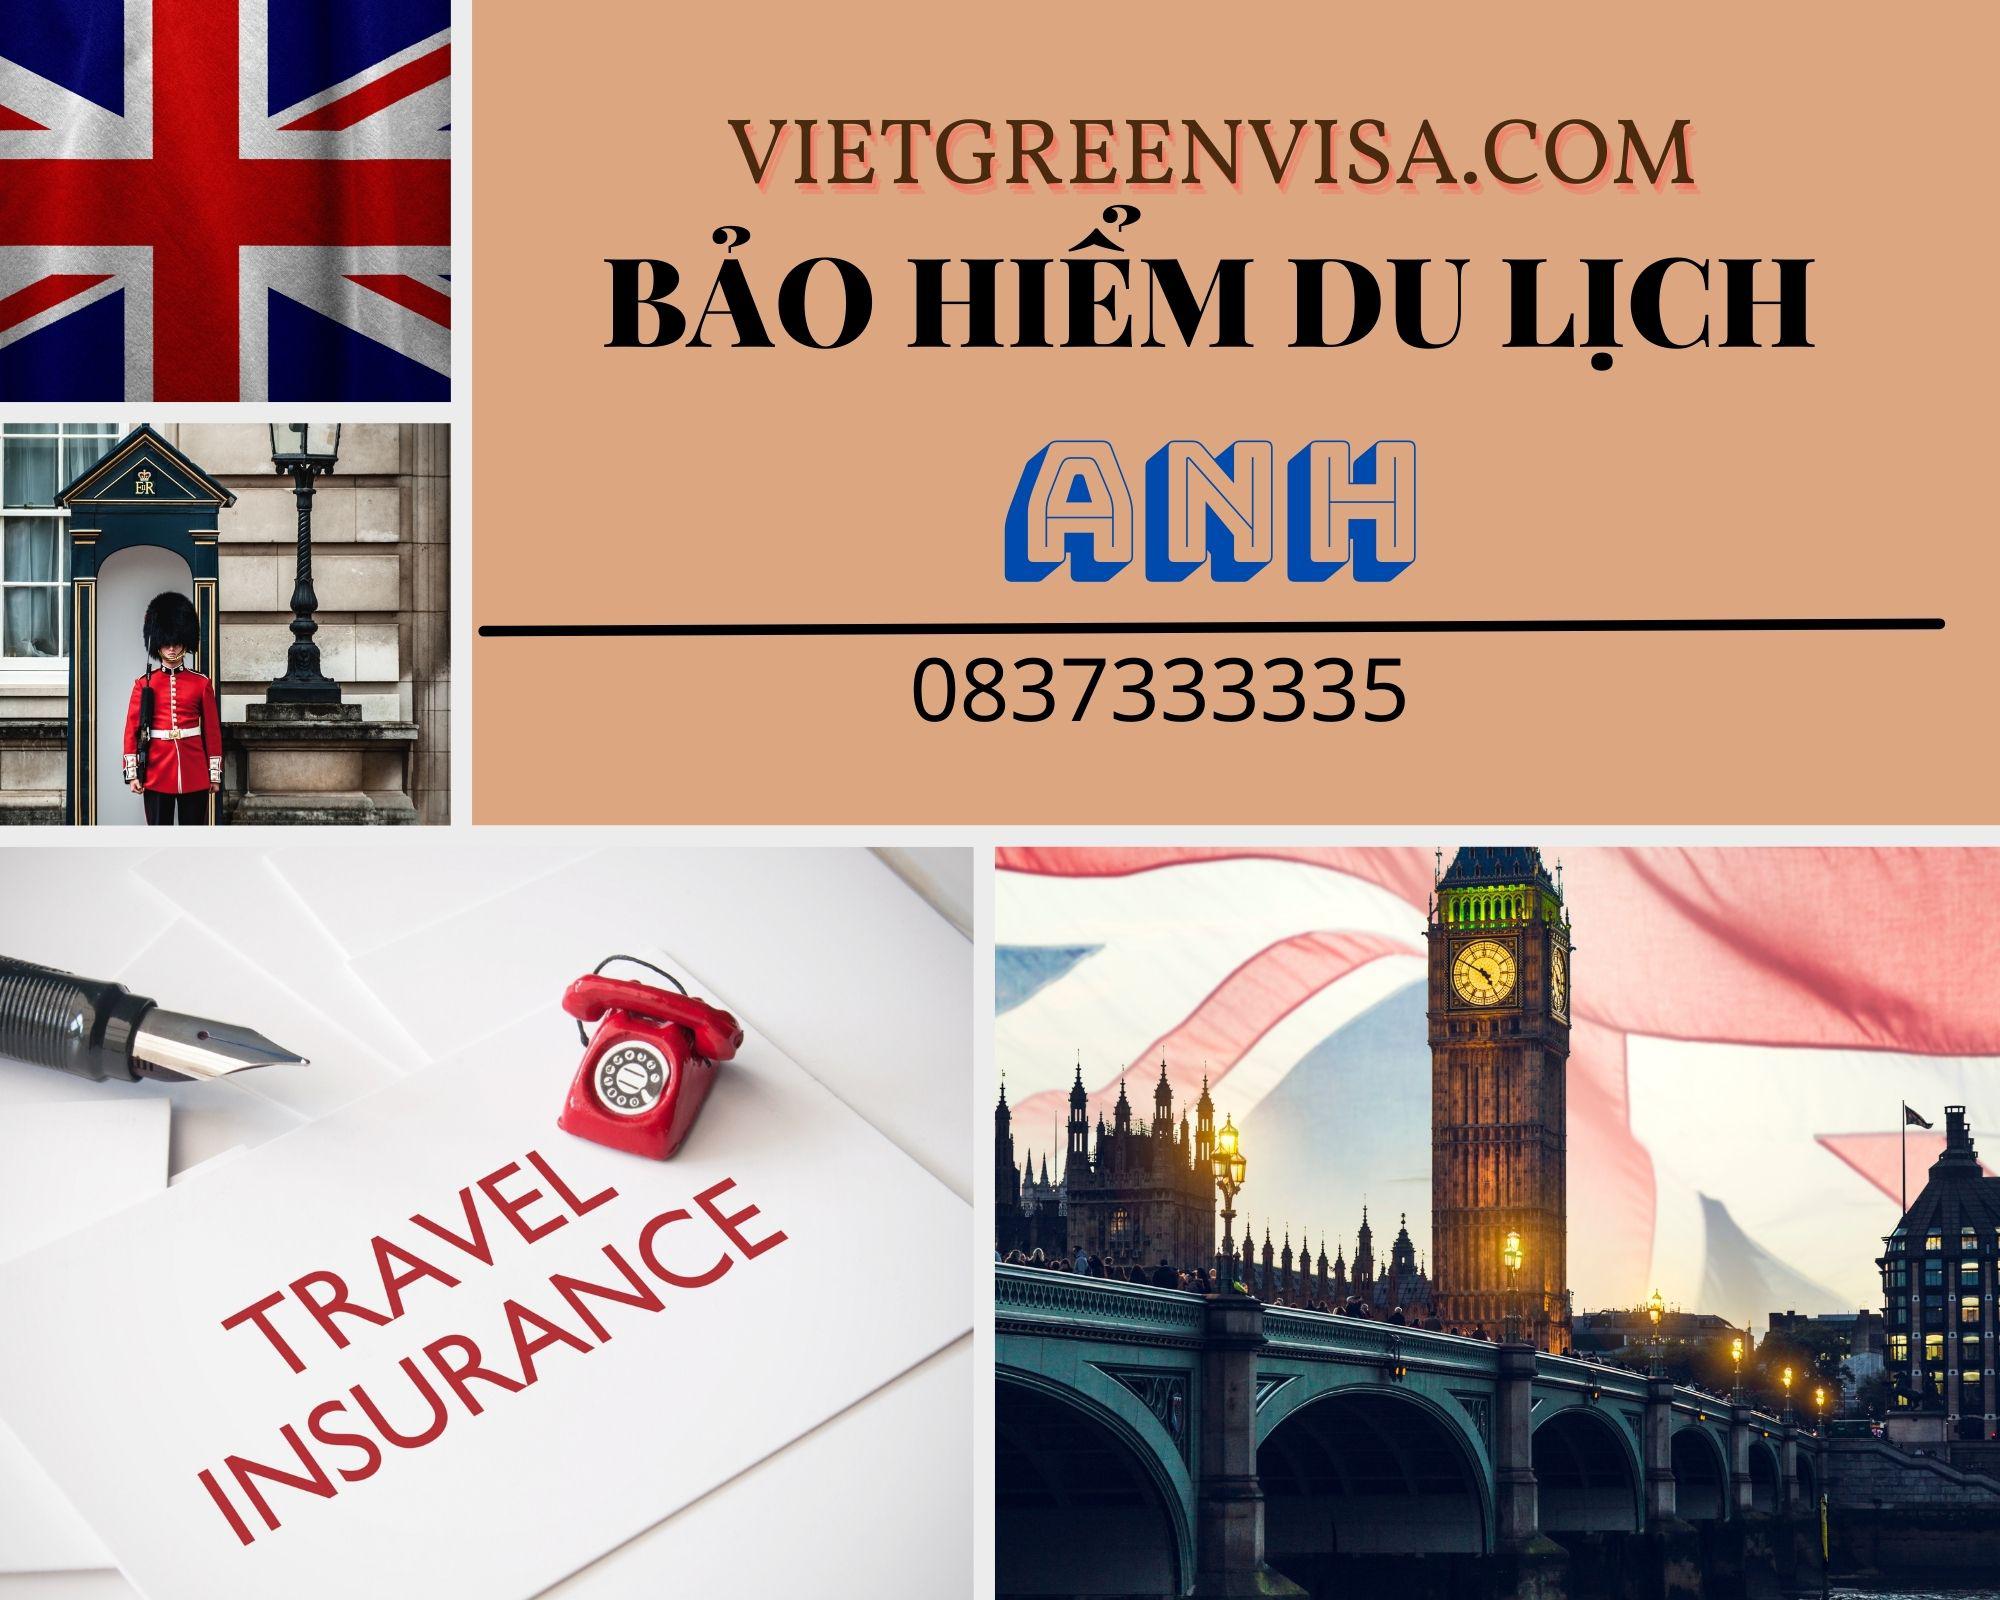 Dịch vụ bảo hiểm du lịch xin visa Anh Quốc trọn gói